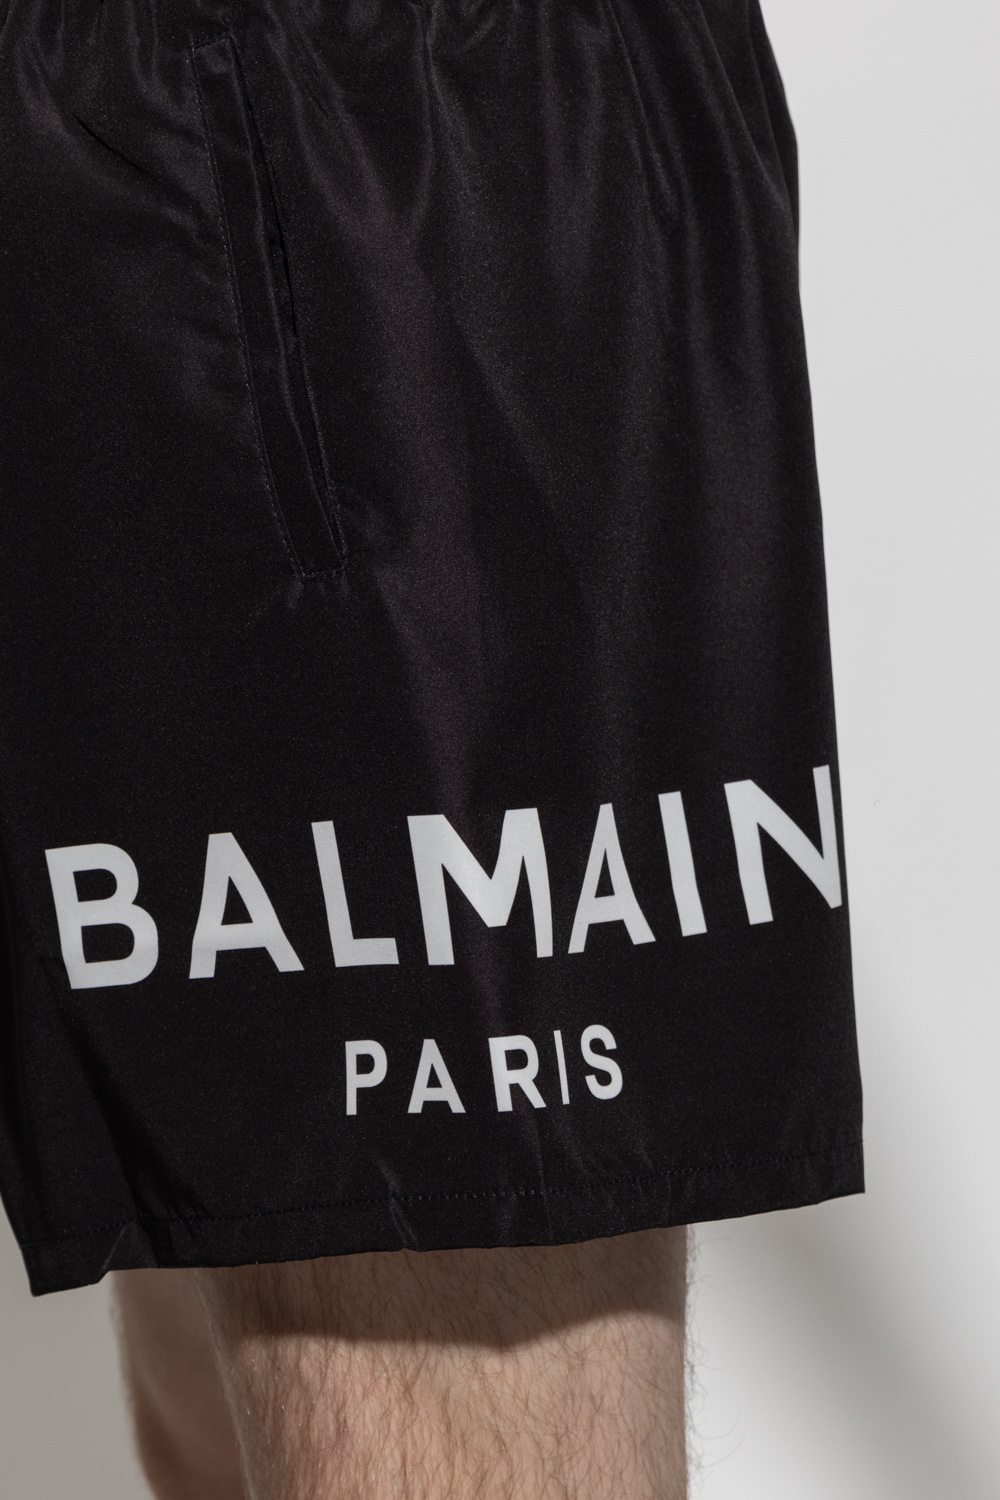 Balmain Balmain BBuzz 19 shoulder bag Black